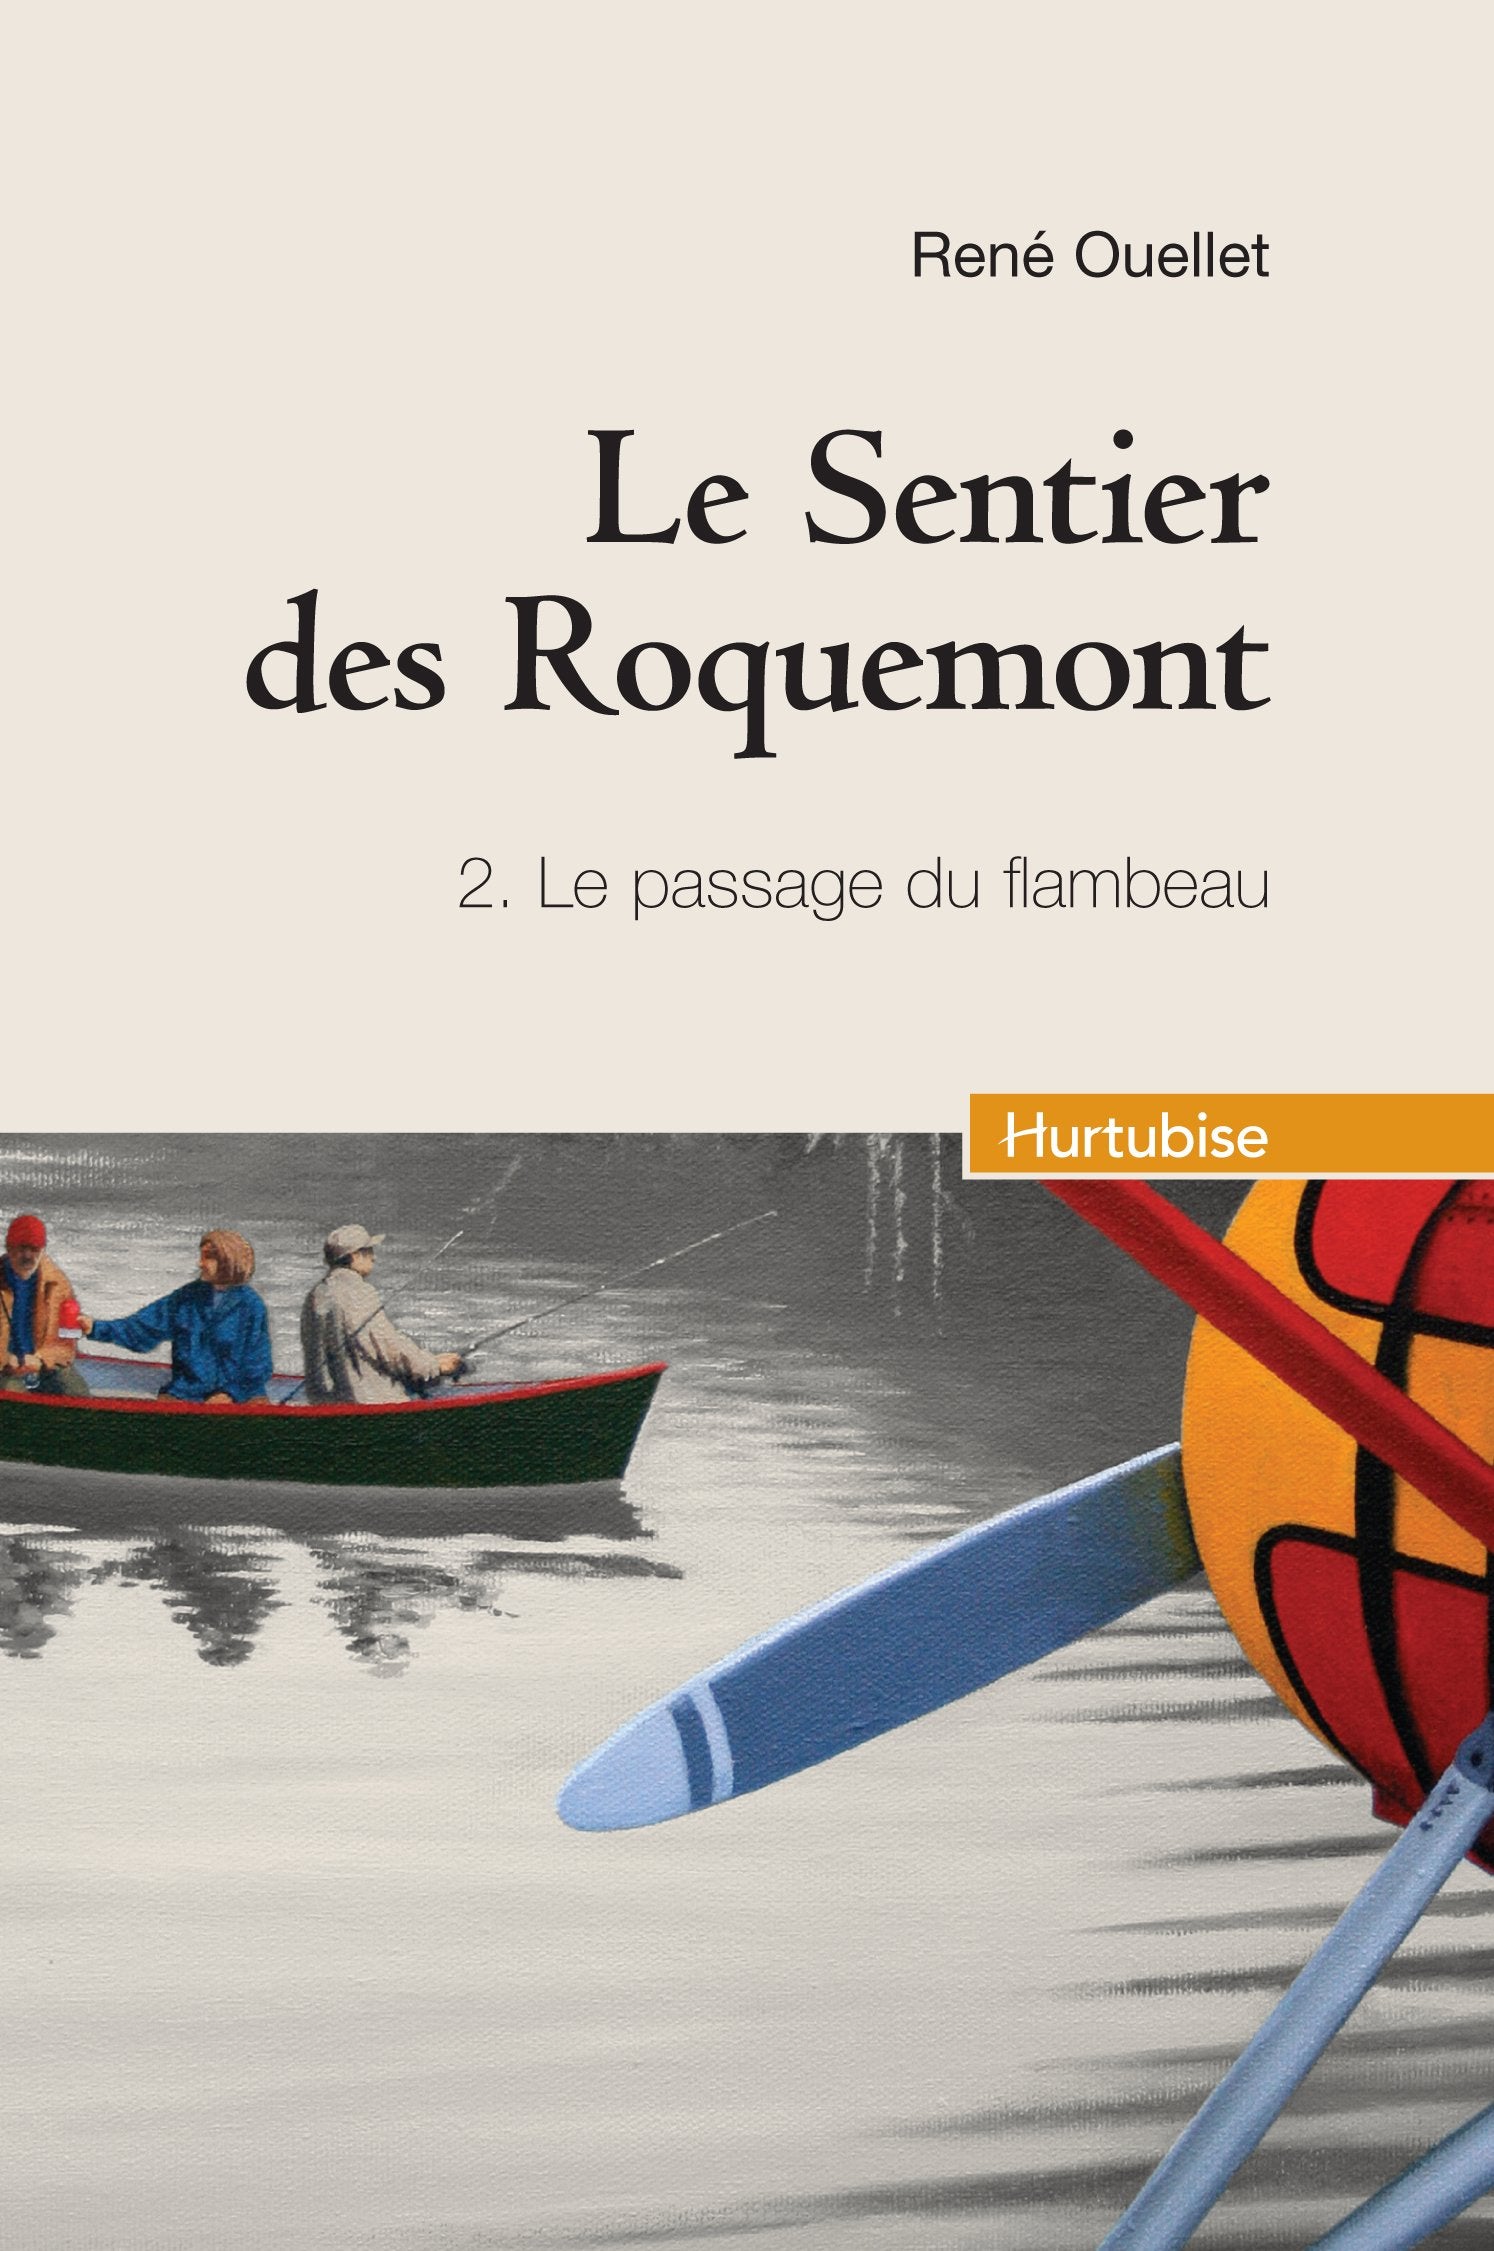 Le Sentier des Roquemont # 2 : Le passage du flambeau - René Ouellet